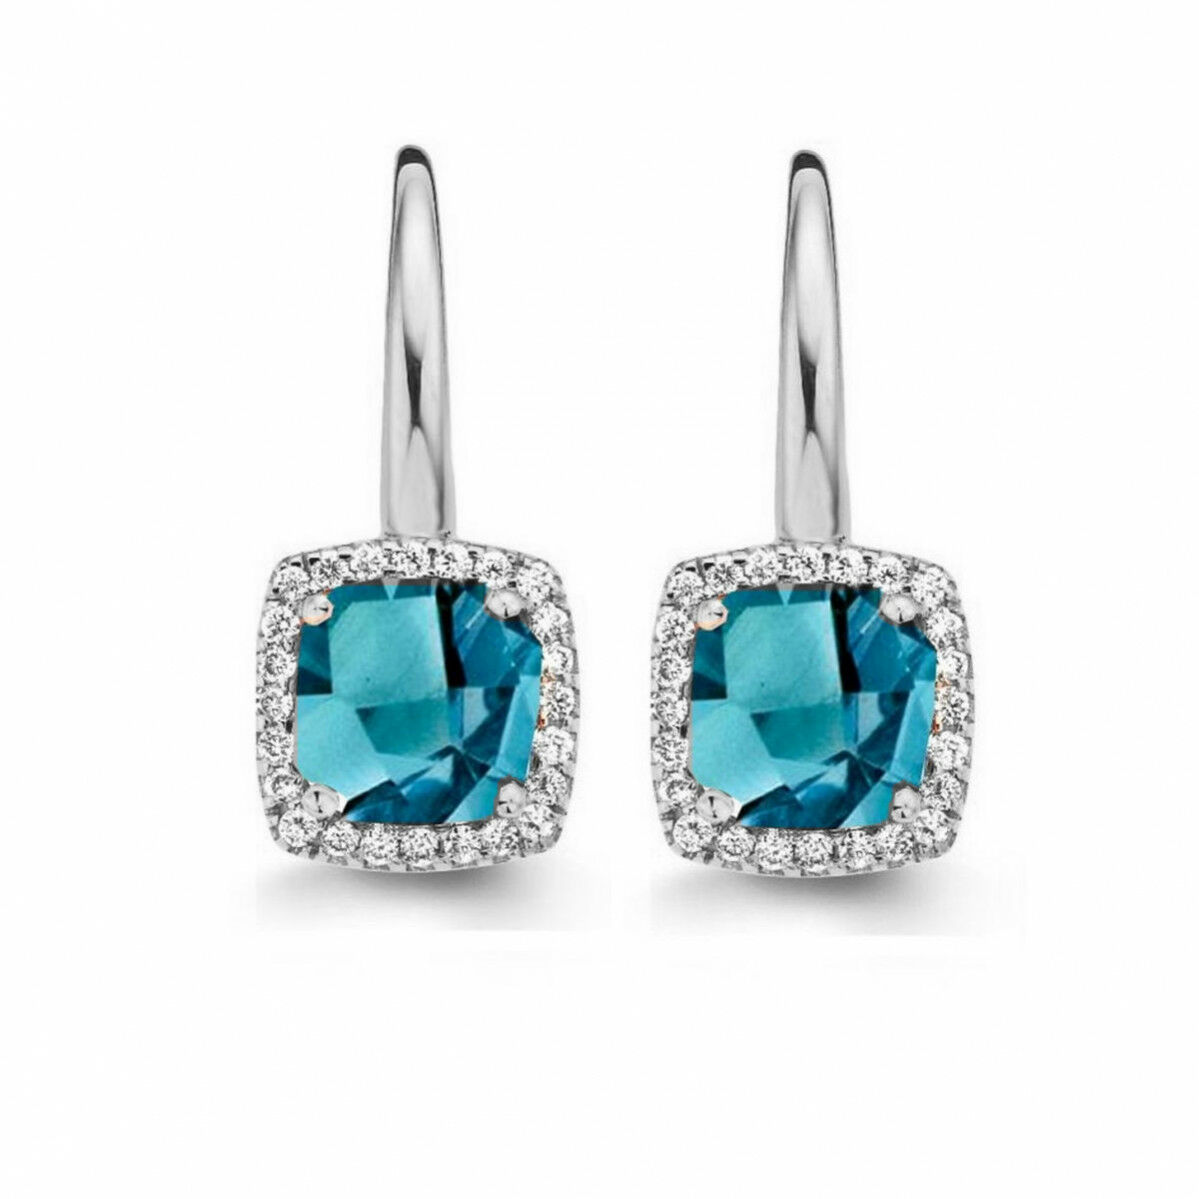 Boucles d'oreilles Etna, topaze London Blue et diamants sur or blanc 750